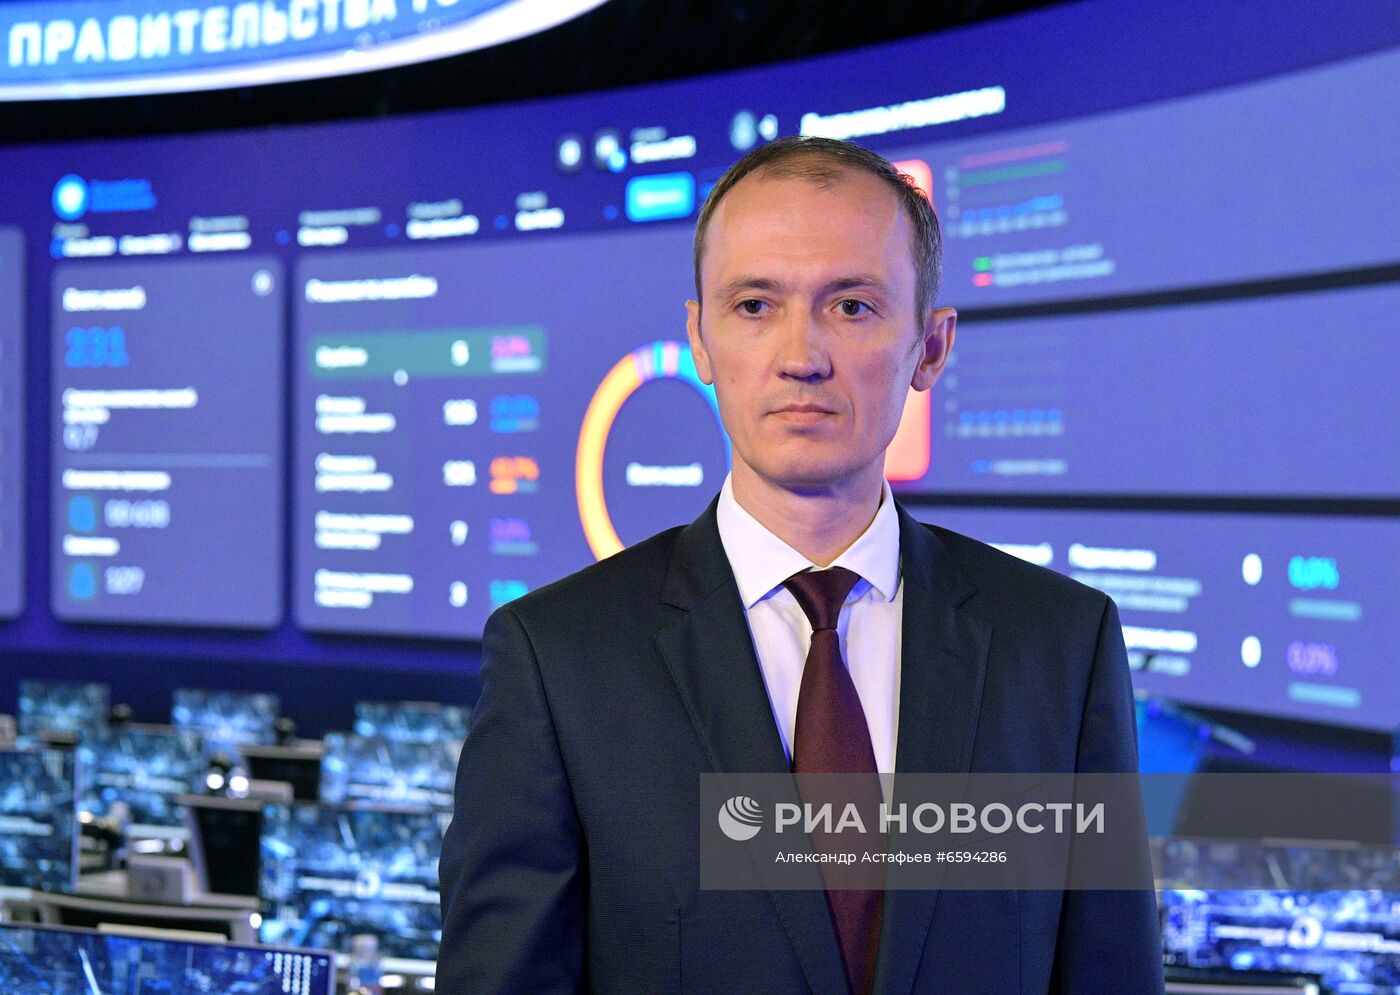 Вице-премьер РФ Д. Григоренко дал комментарий к теме реформы контрольно-надзорной деятельности